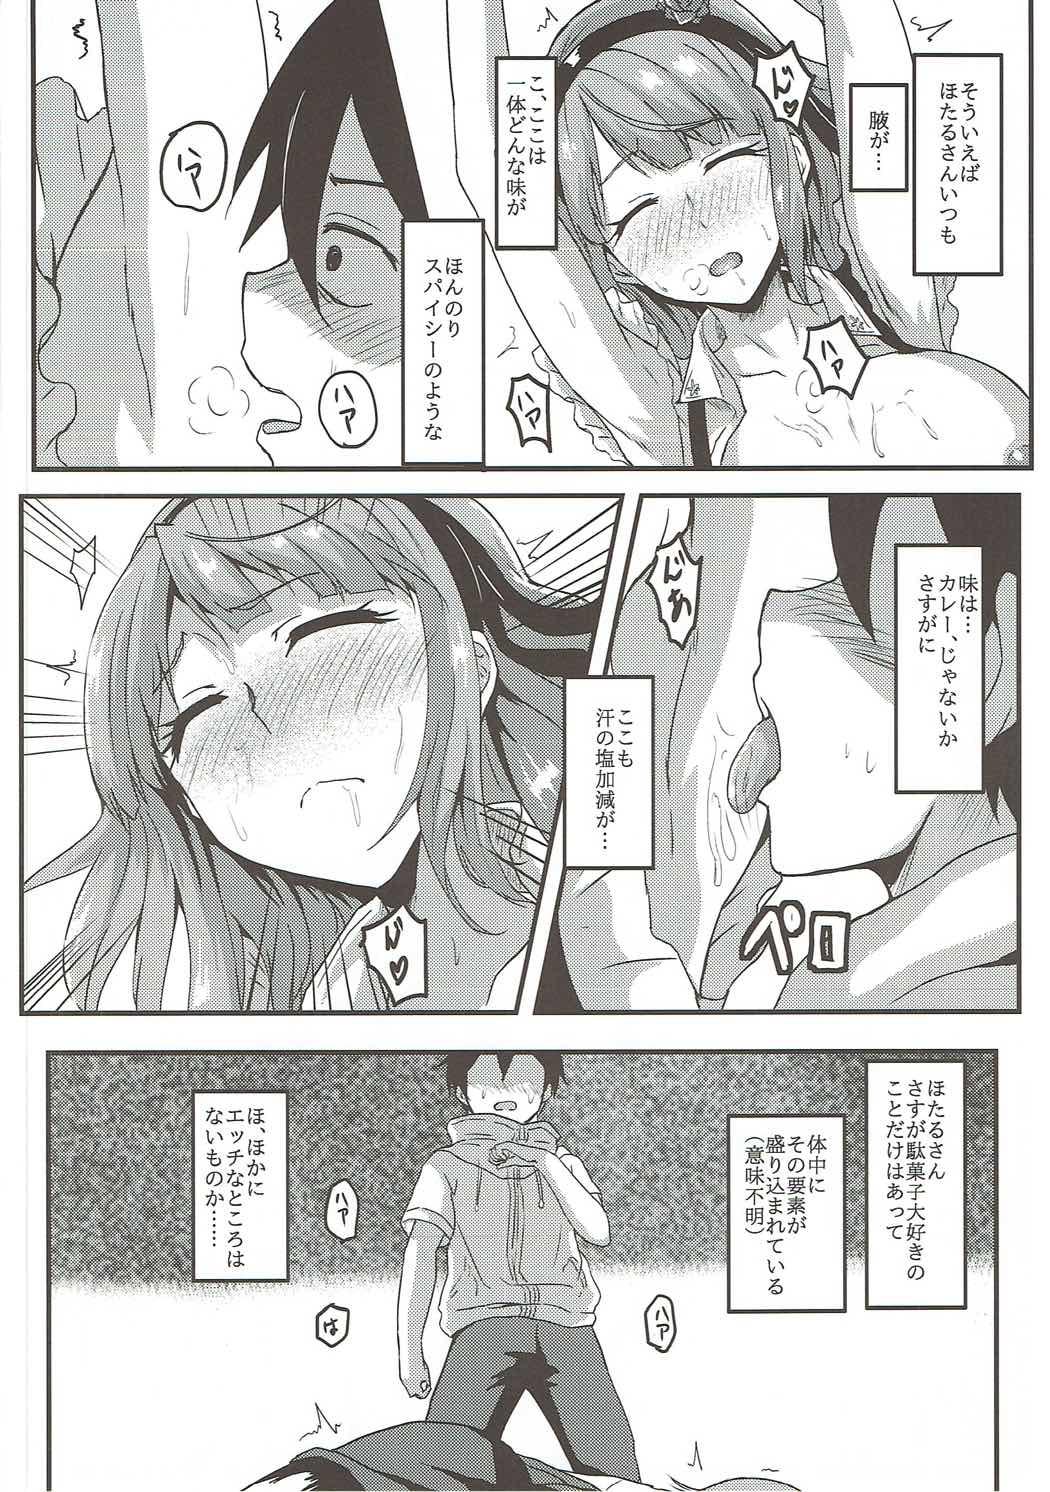 Whores Hotaru-san wa Dagashi no Kaori? - Dagashi kashi Muscle - Page 7